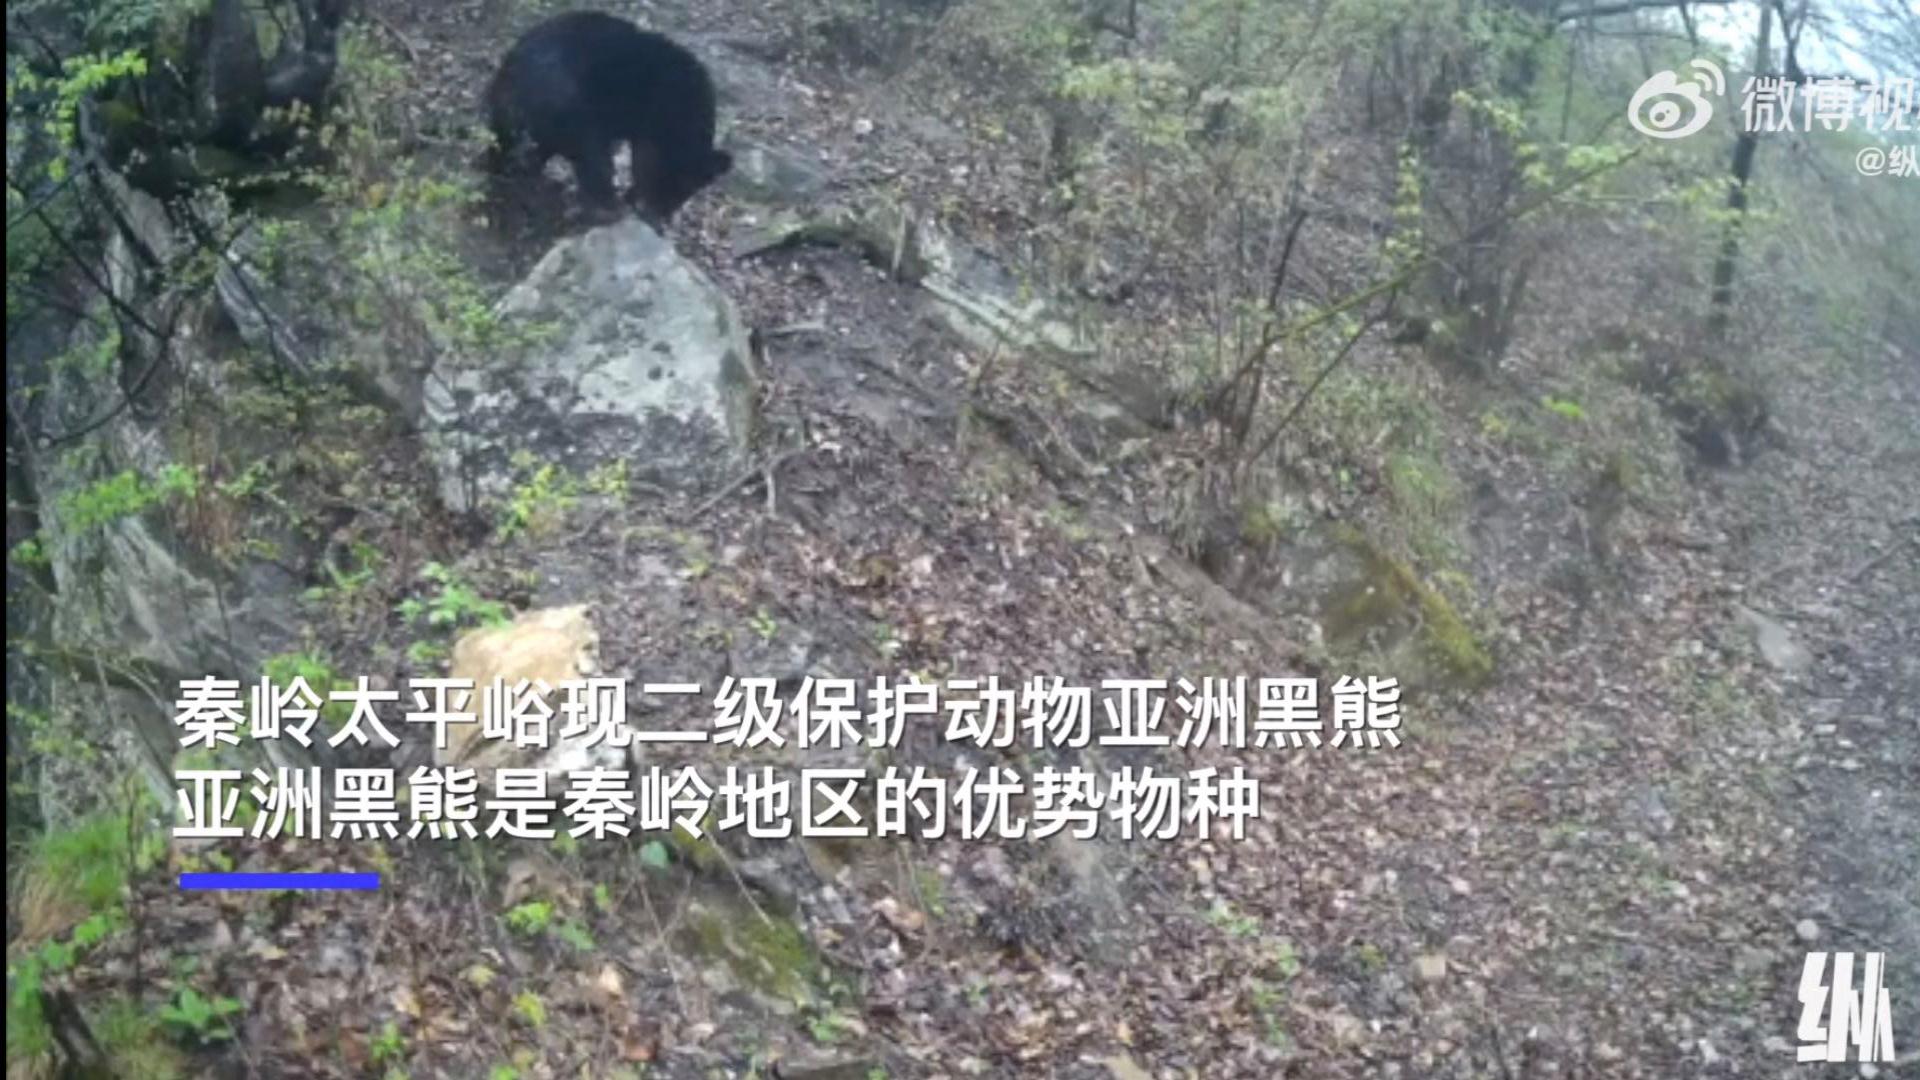 秦岭一红外相机首次捕捉到亚洲黑熊 之前只有村民见到过